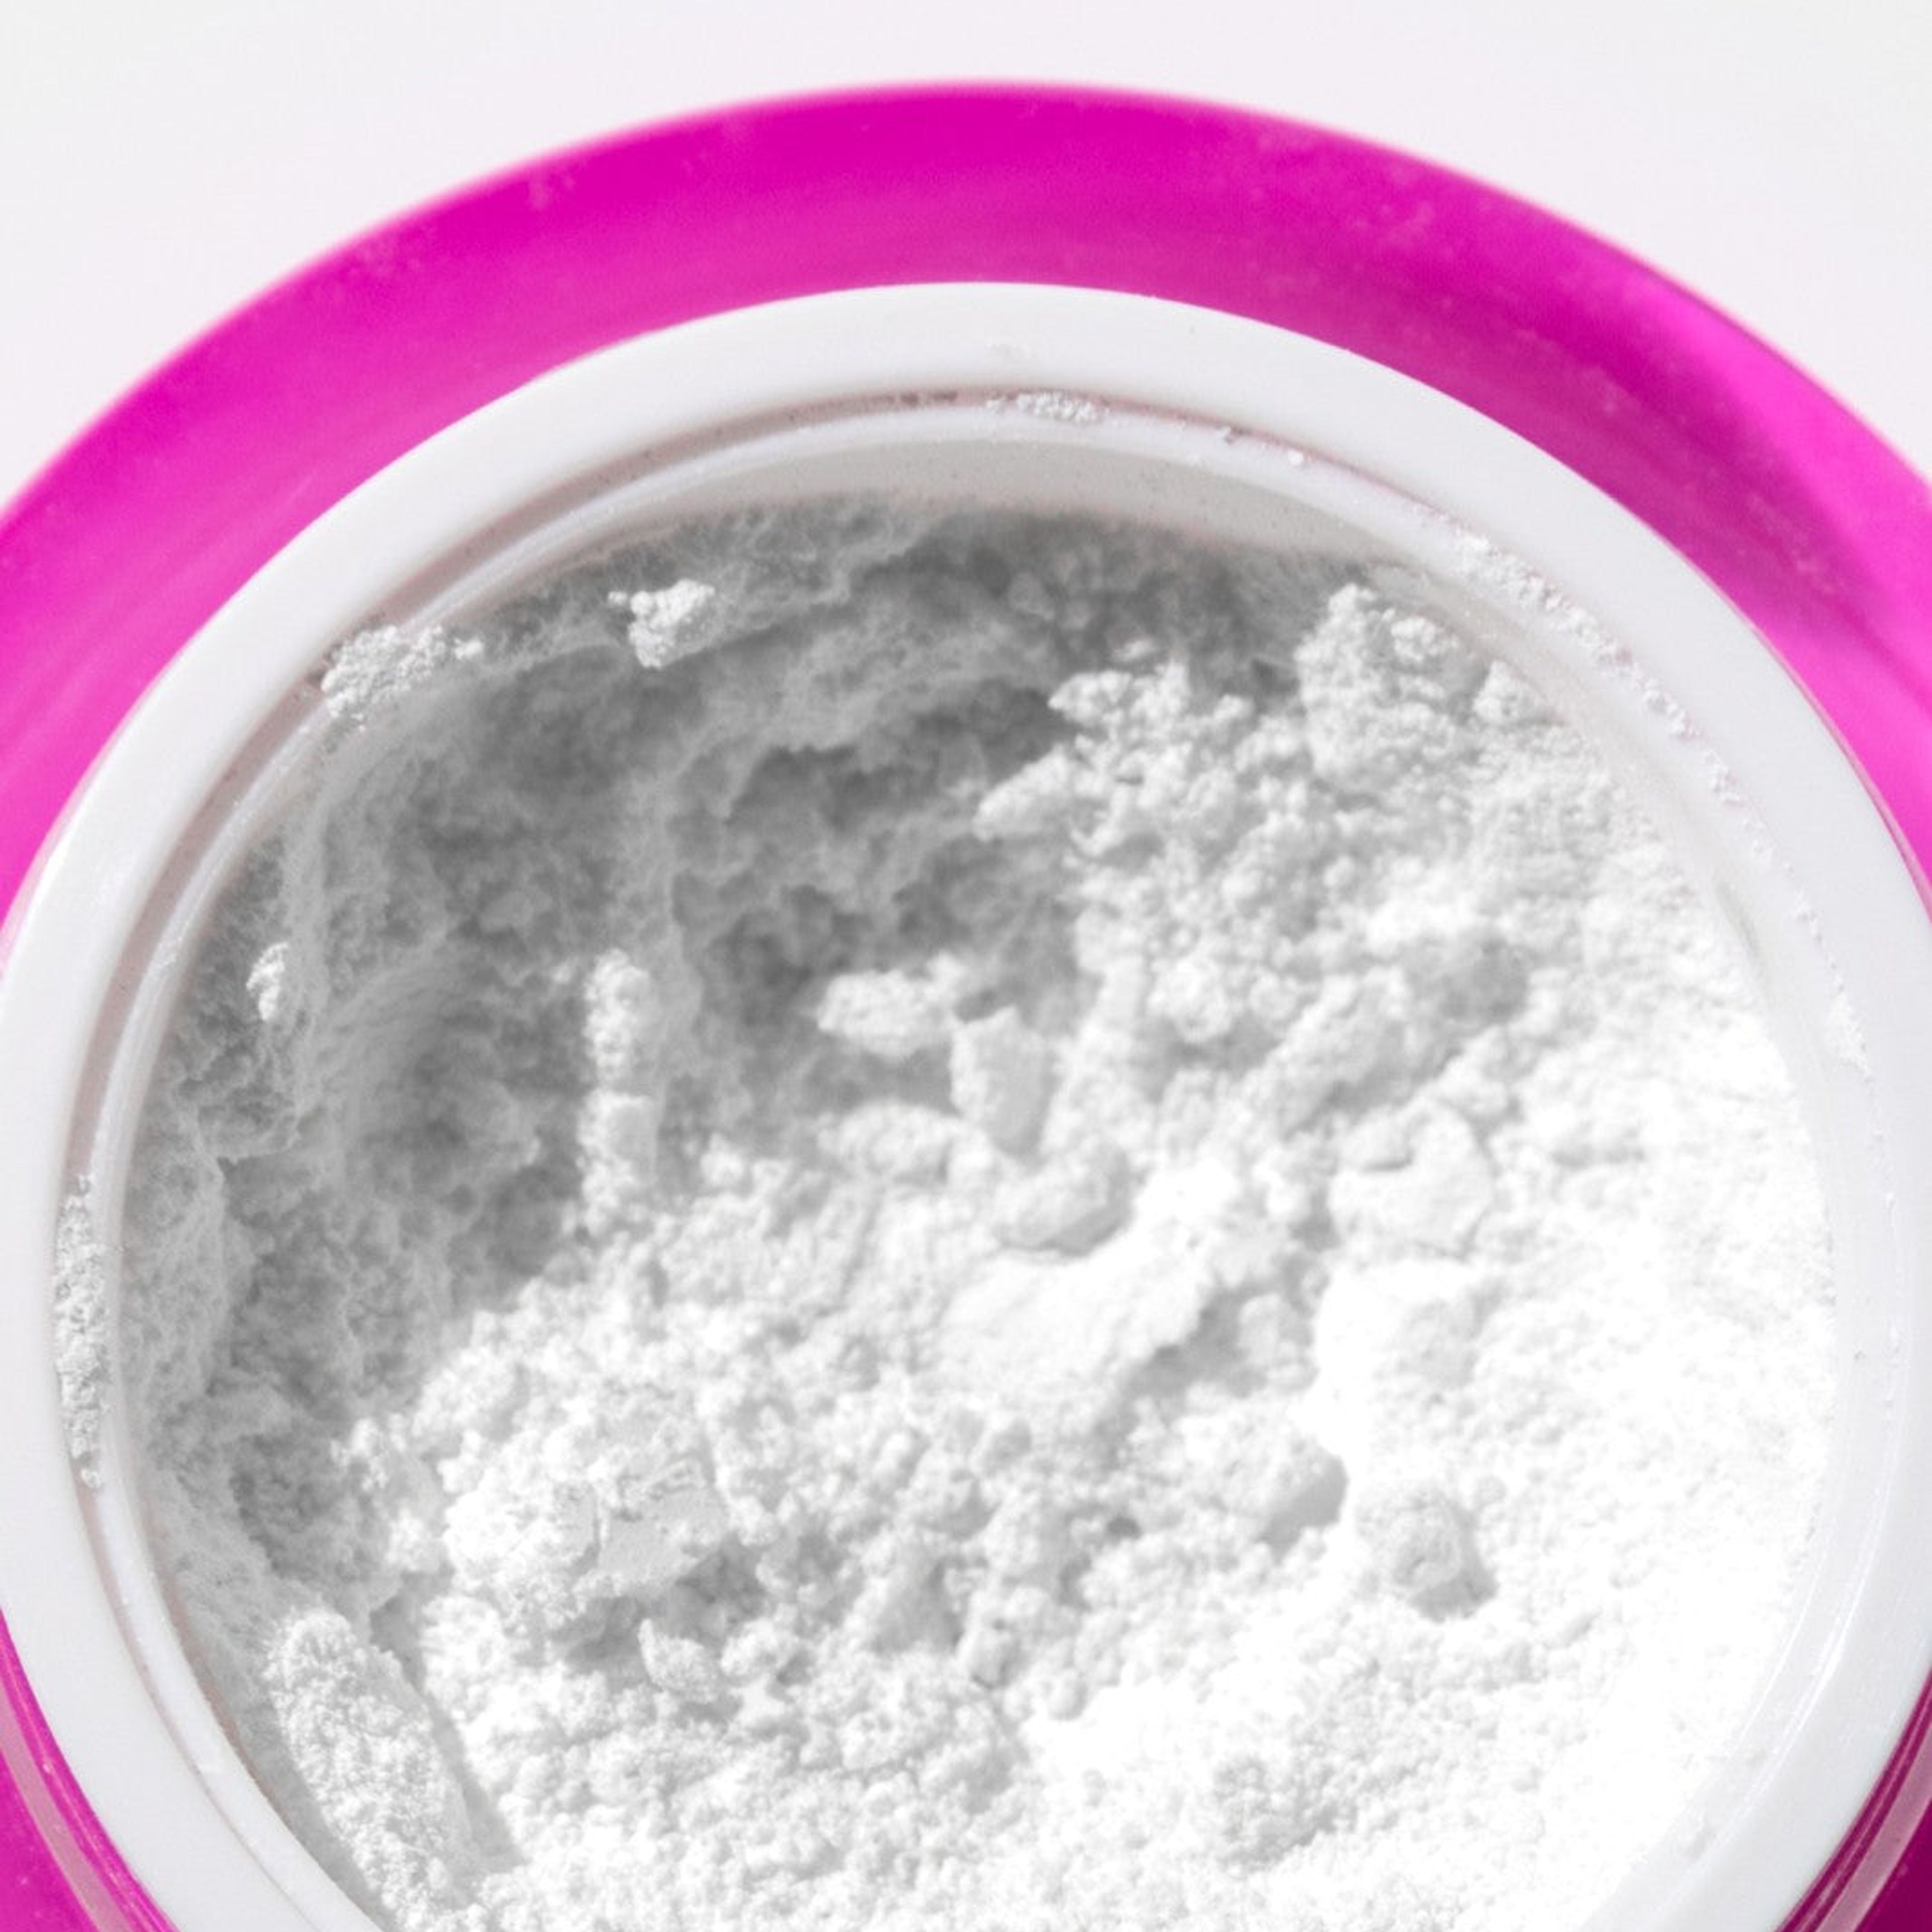 PAP+ Whitening Powder